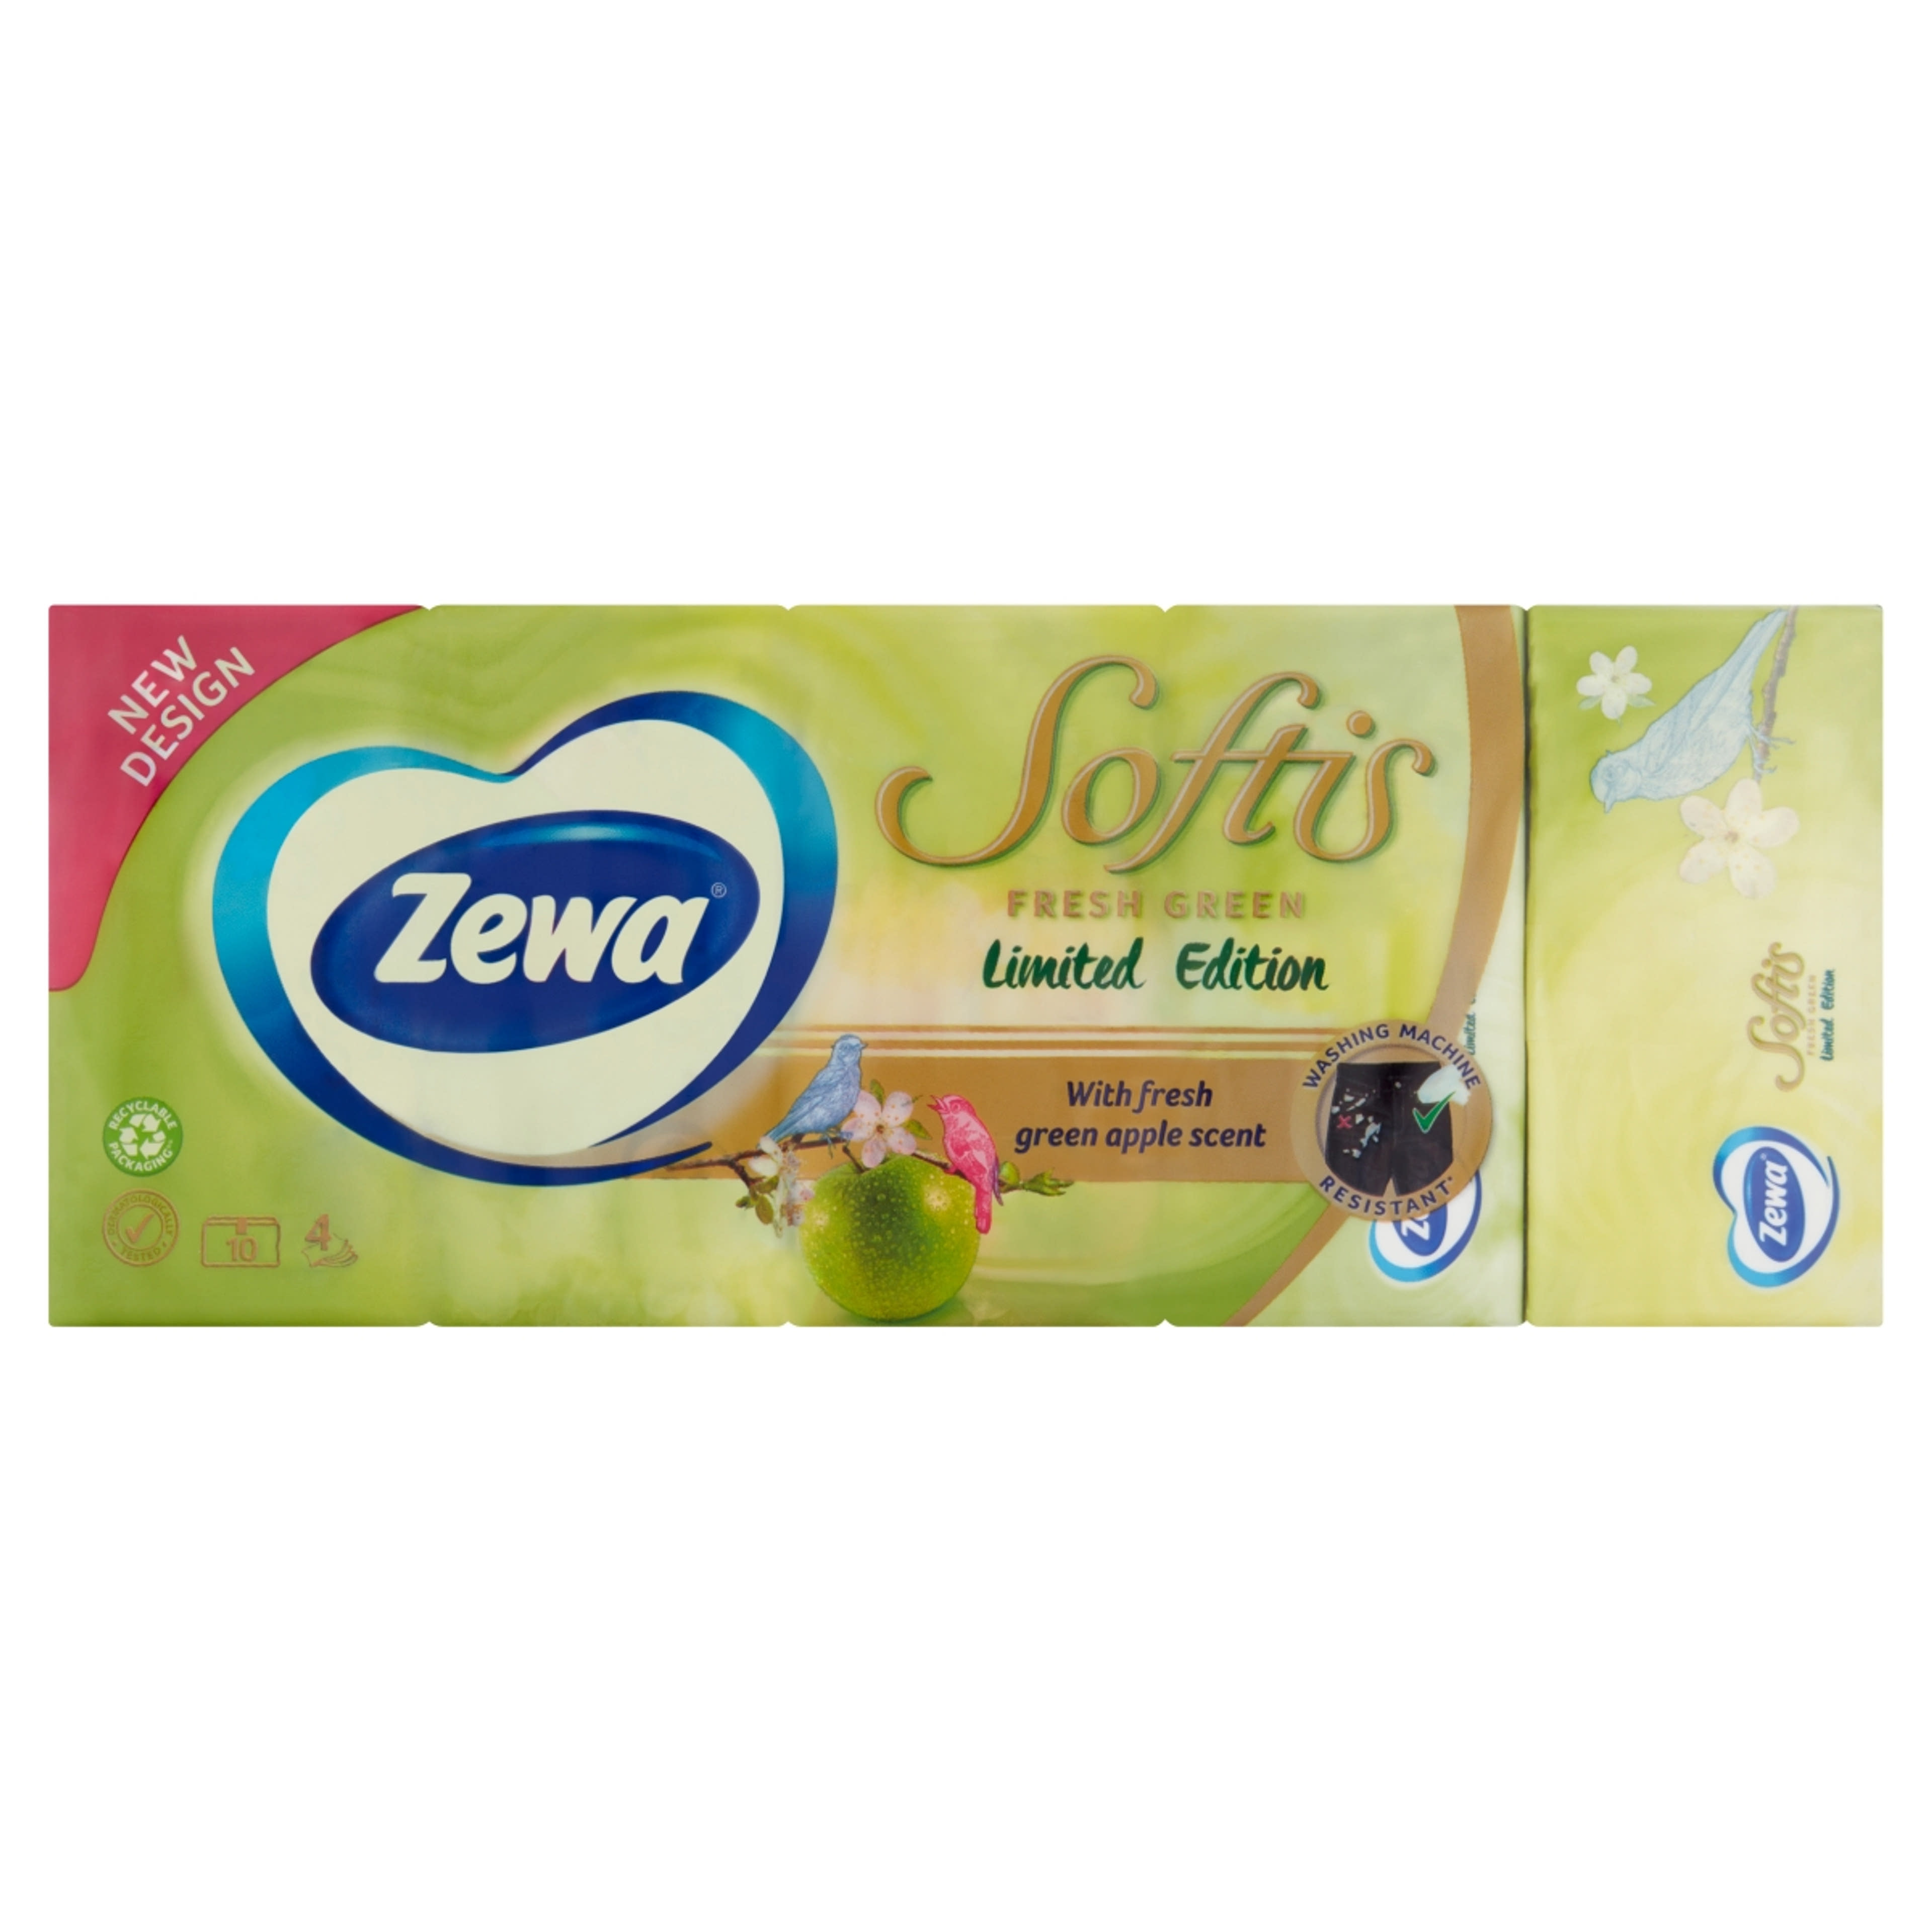 Zewa softis papírzsebkendő limited edition 4 rétegű 10x9 - 90 db